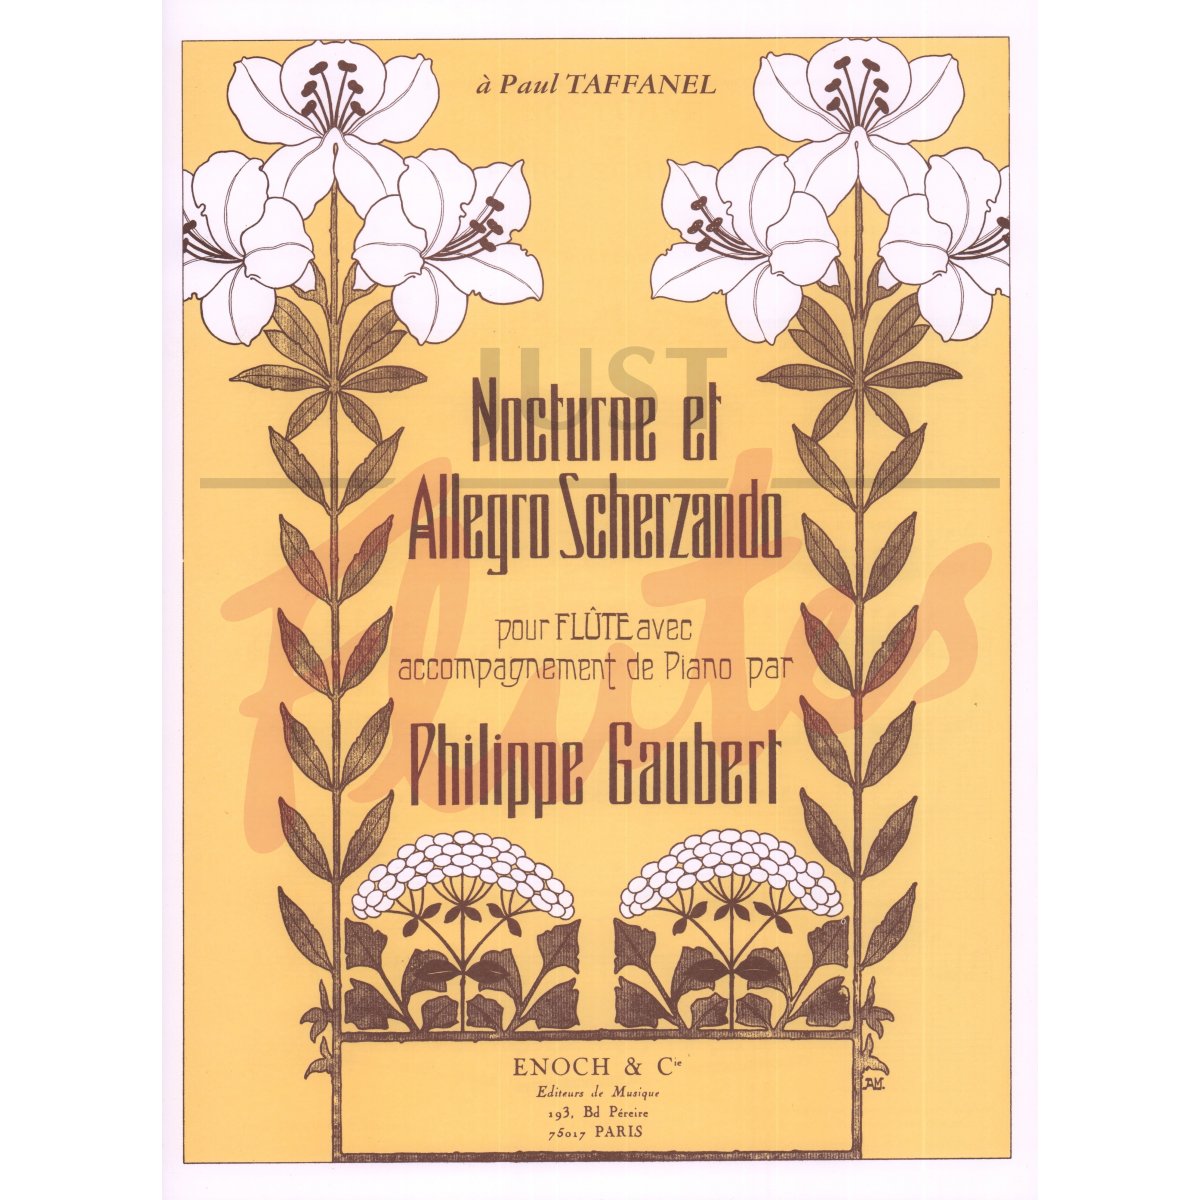 Nocturne et Allegro Scherzando for Flute and Piano